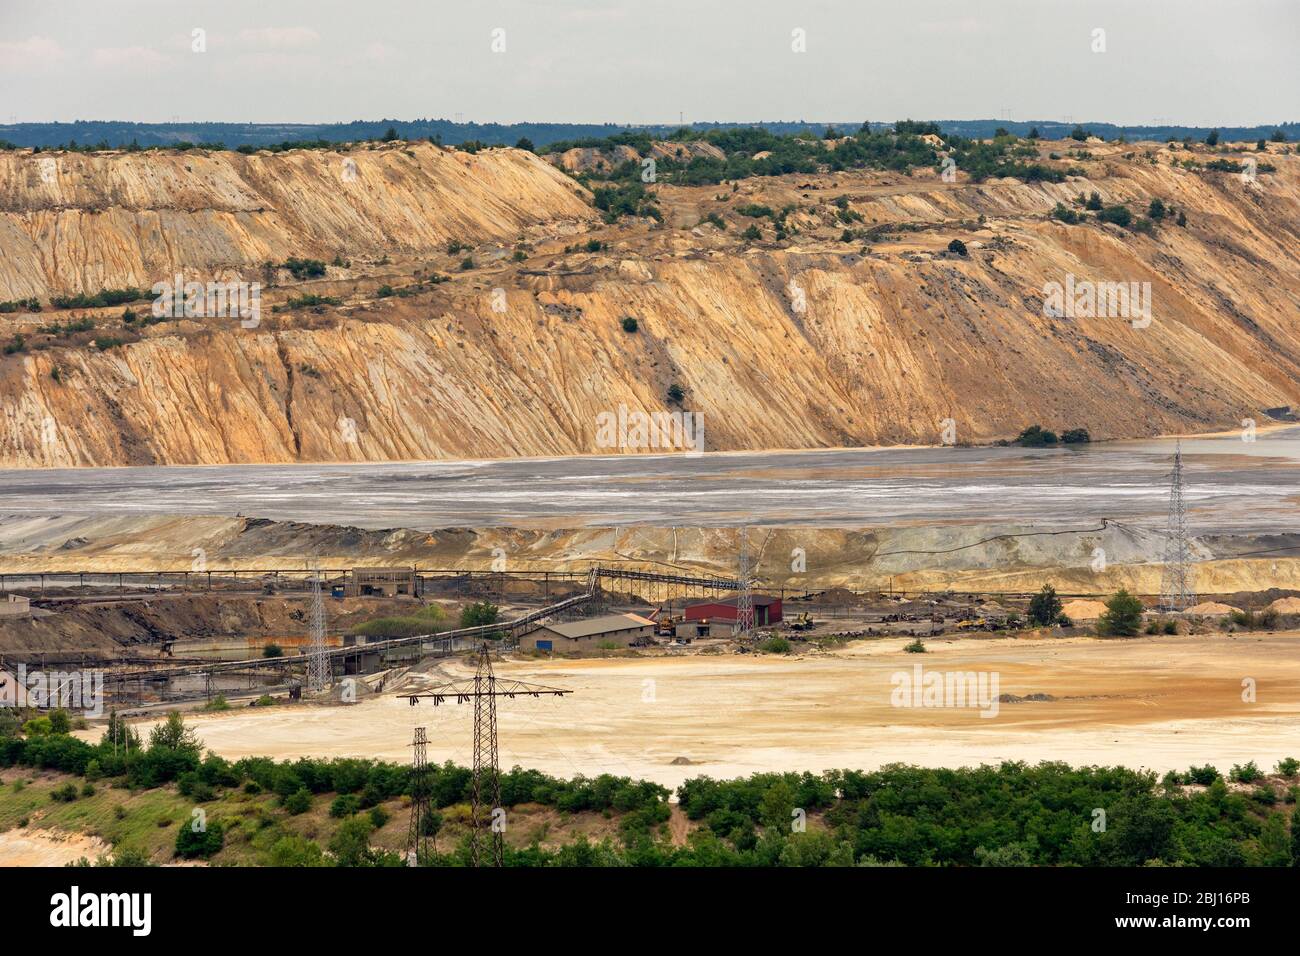 Bor / Serbien - 13. Juli 2019: Abraumhalden und Minenhalden in Bor, Ostserbien, einer der größten Kupferminen Europas, die im Besitz der chinesischen Bergbauunternehmen ist Stockfoto